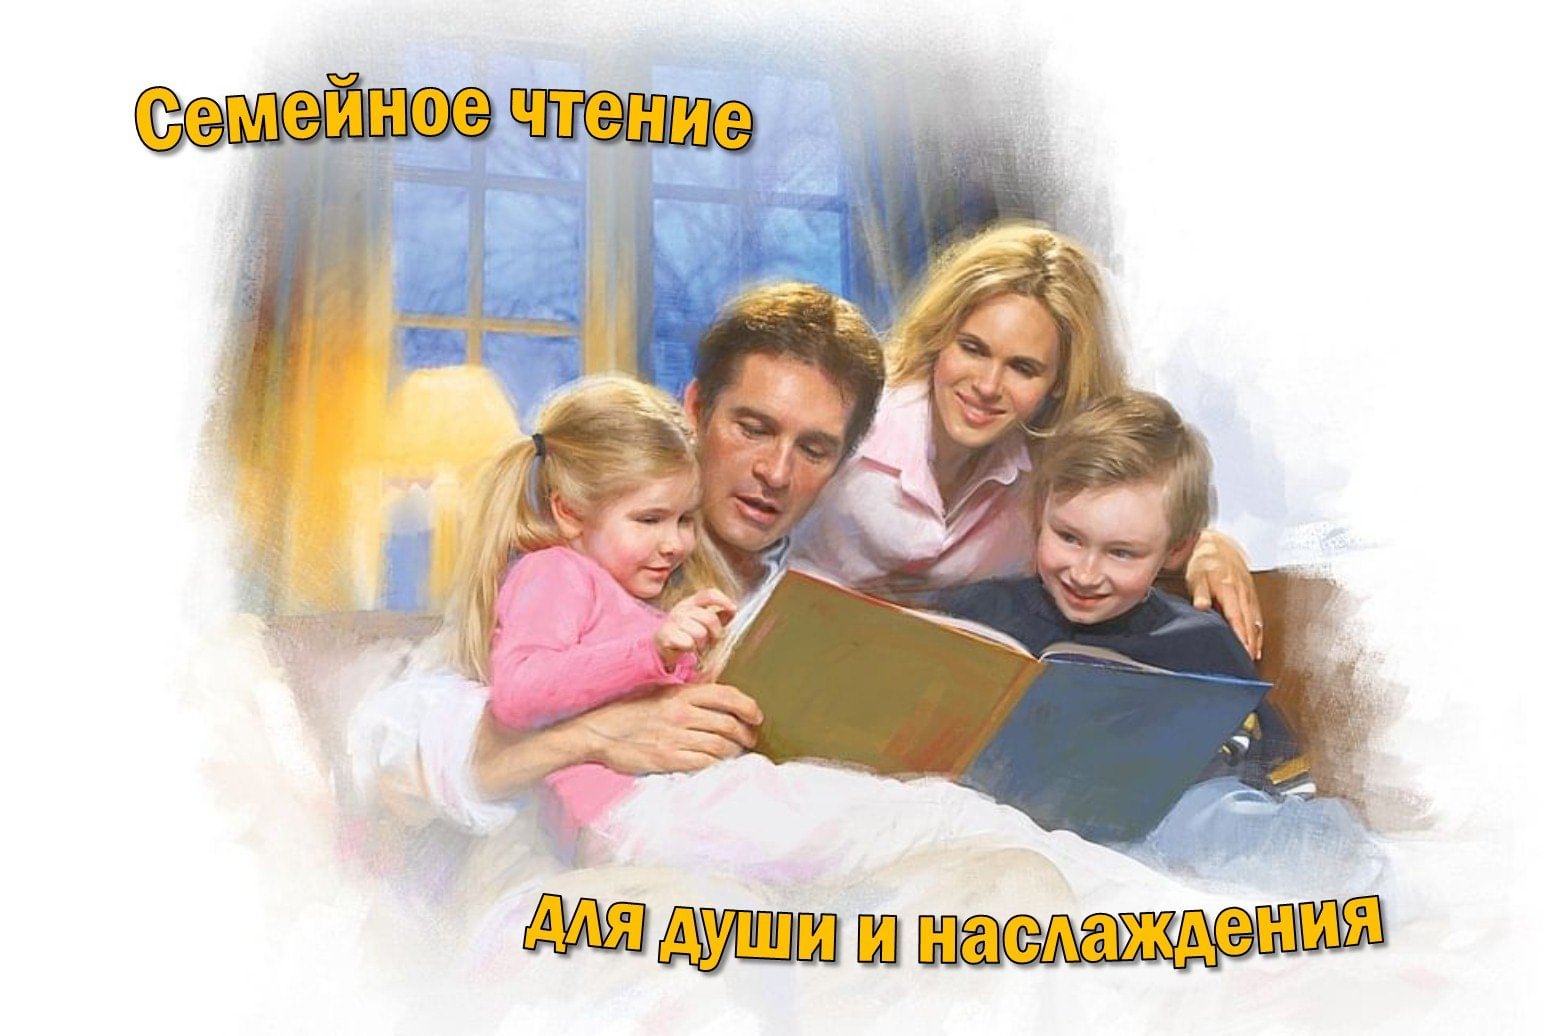 Чтение в семье